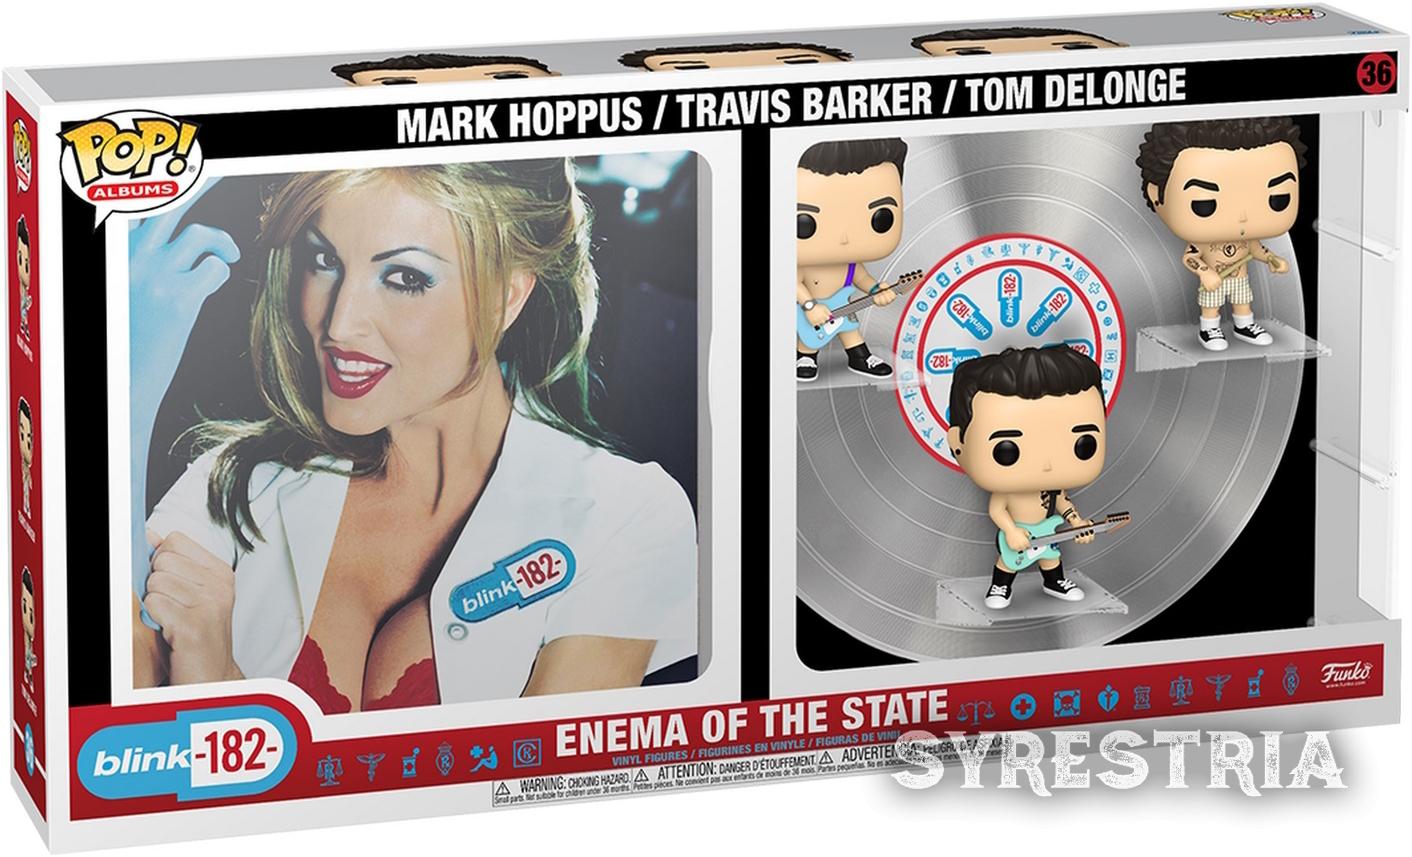 Blink 182 - Enema Of The State Mark Hoppus Travis Barker Tom Delonge 36 - Funko Pop! Albums - Vinyl Figur